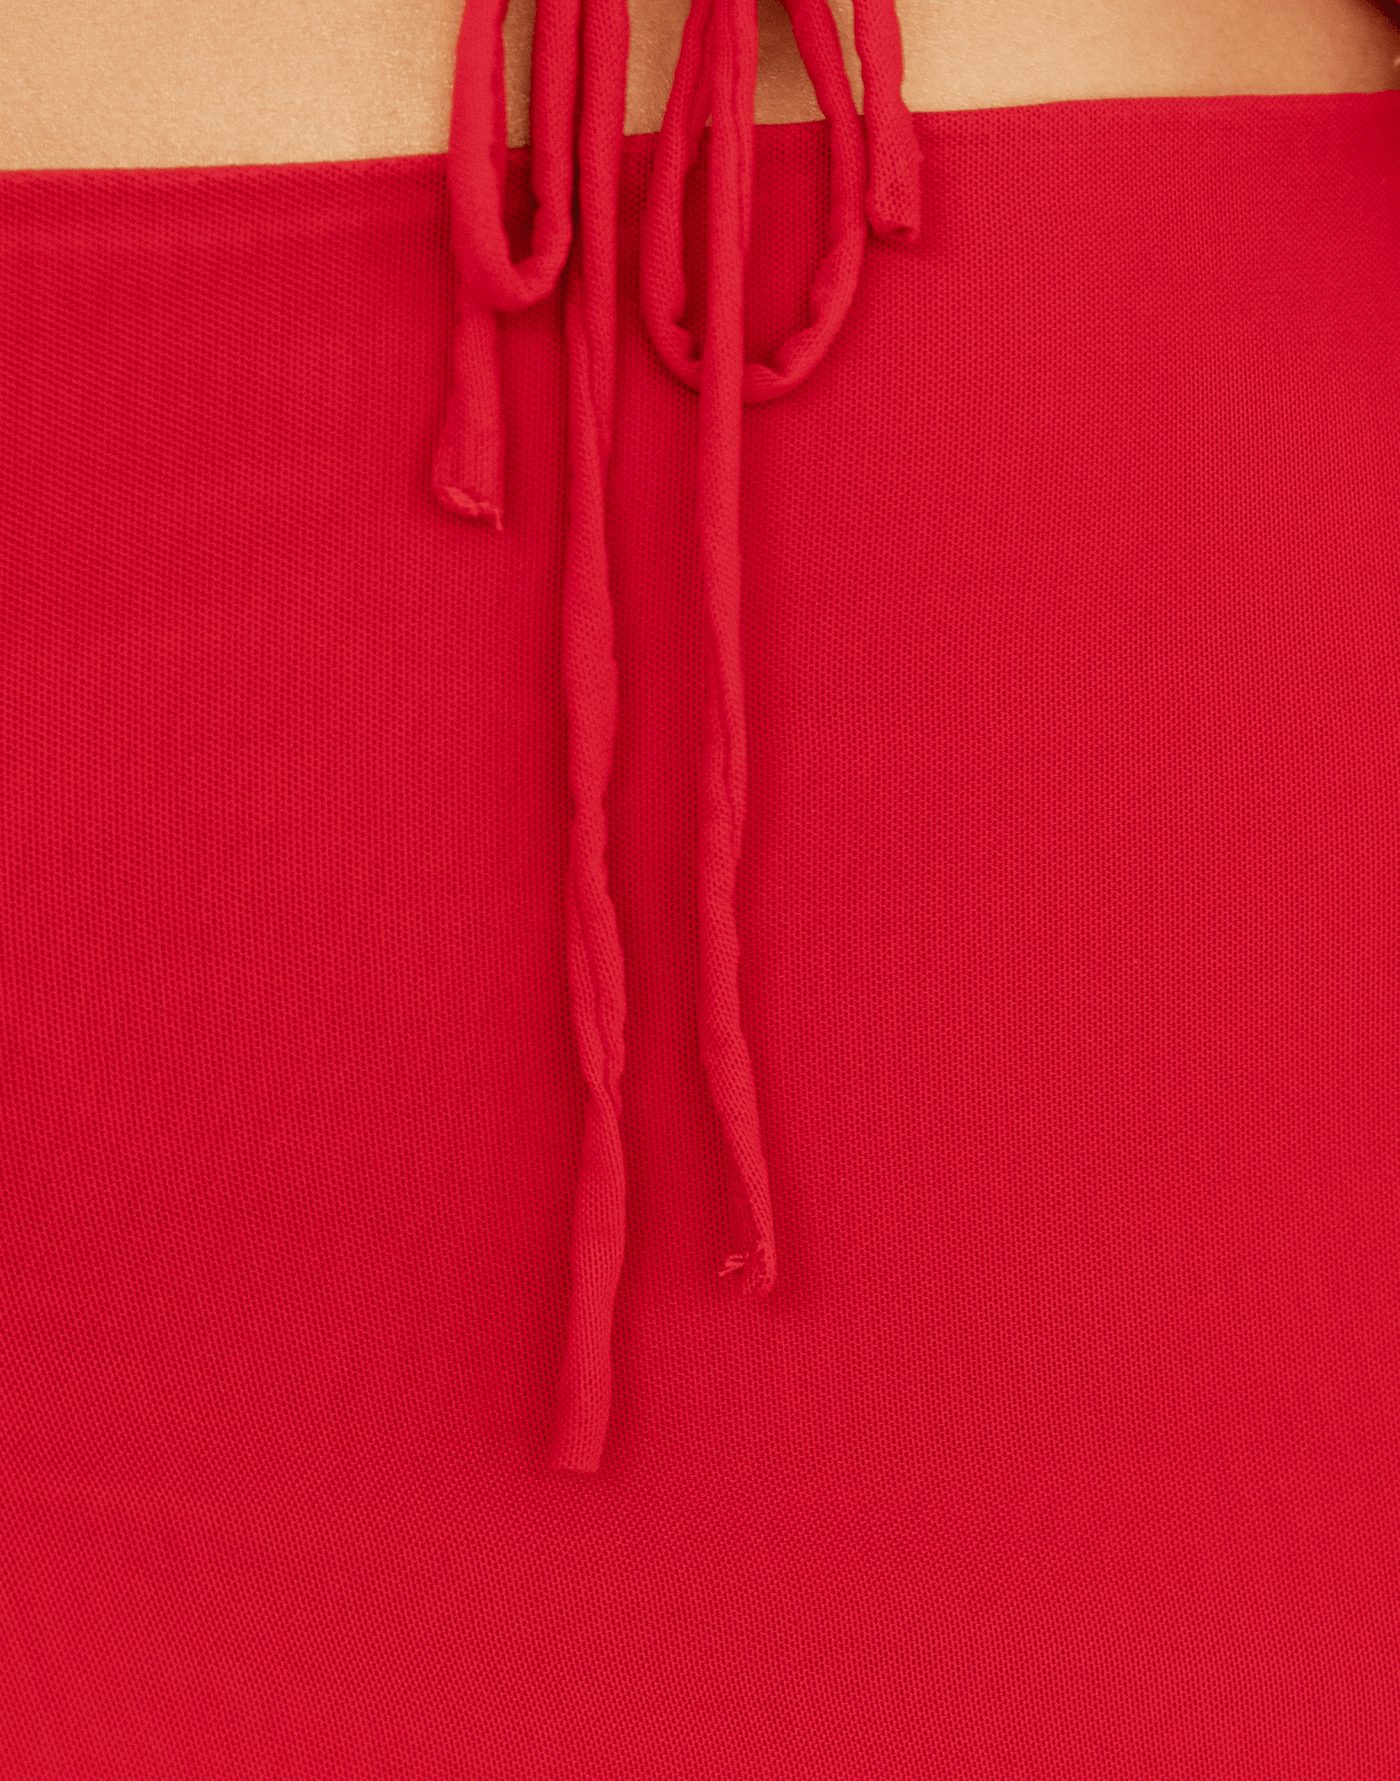 Breakeven Mini Skirt (Red) - Mesh Side Split Mini Skirt - Women's Skirt - Charcoal Clothing